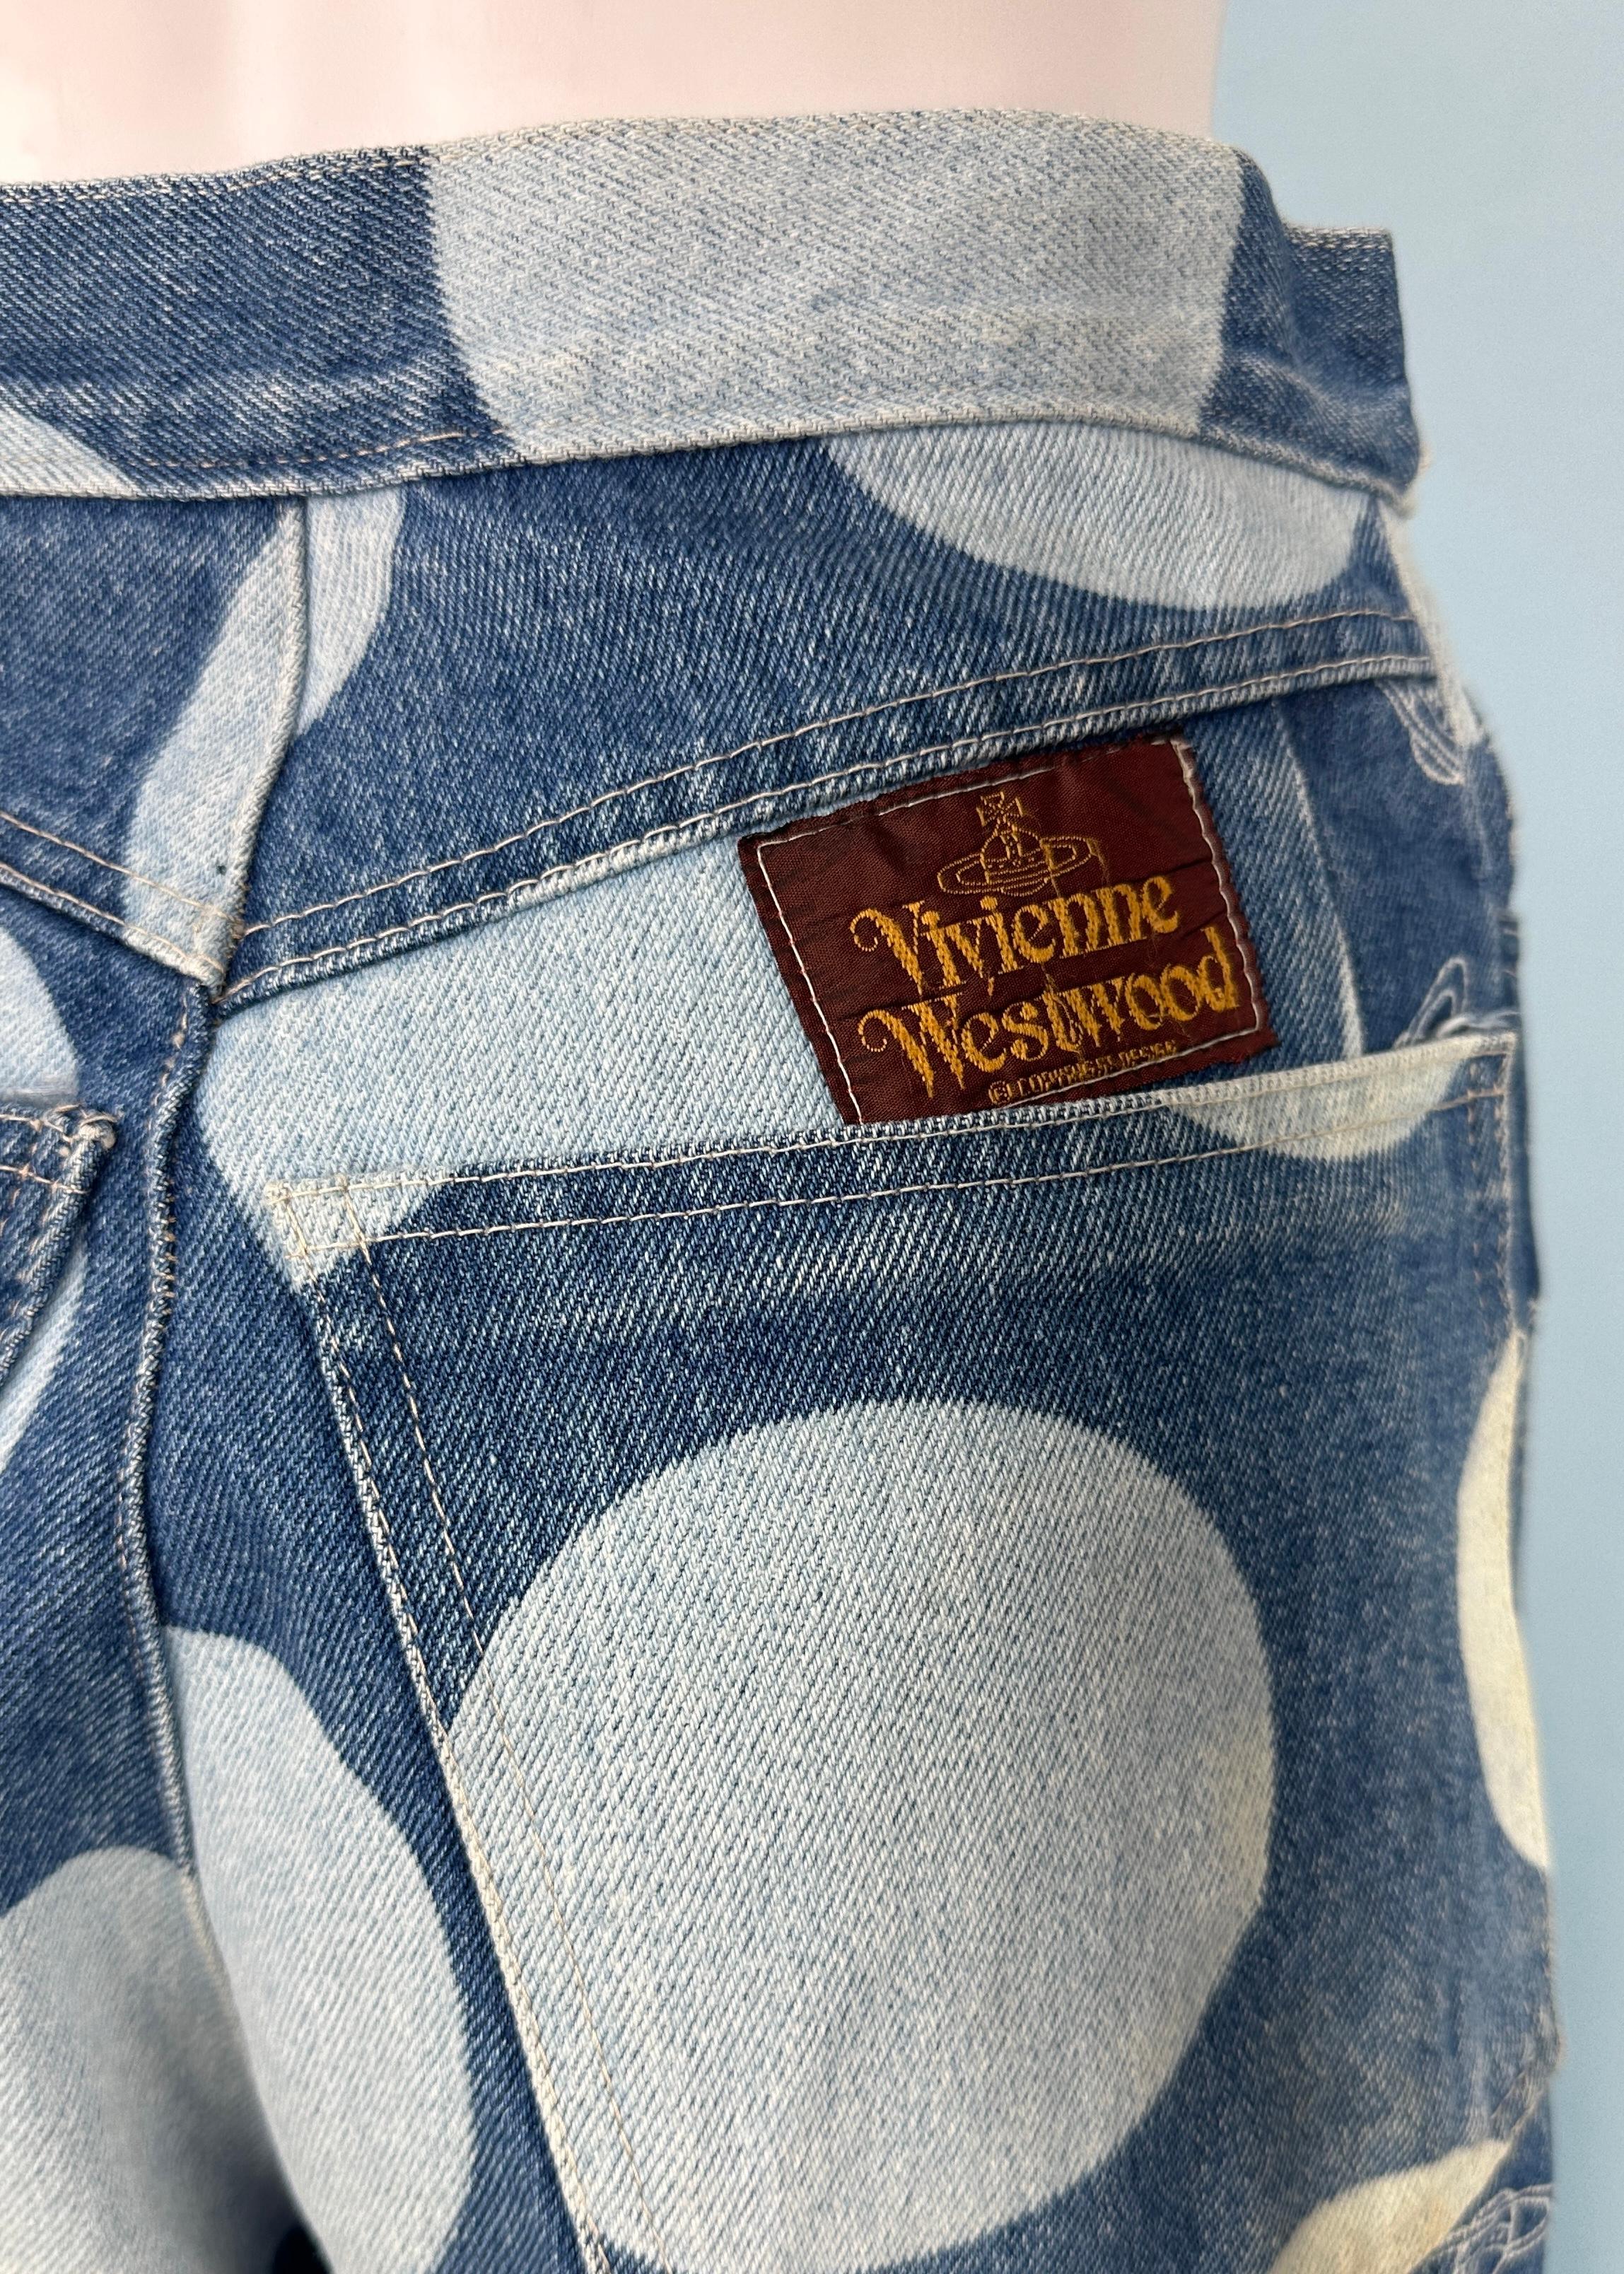 Vivienne Westwood Spring 1986 Orb & Polka Dot Denim Jeans 2